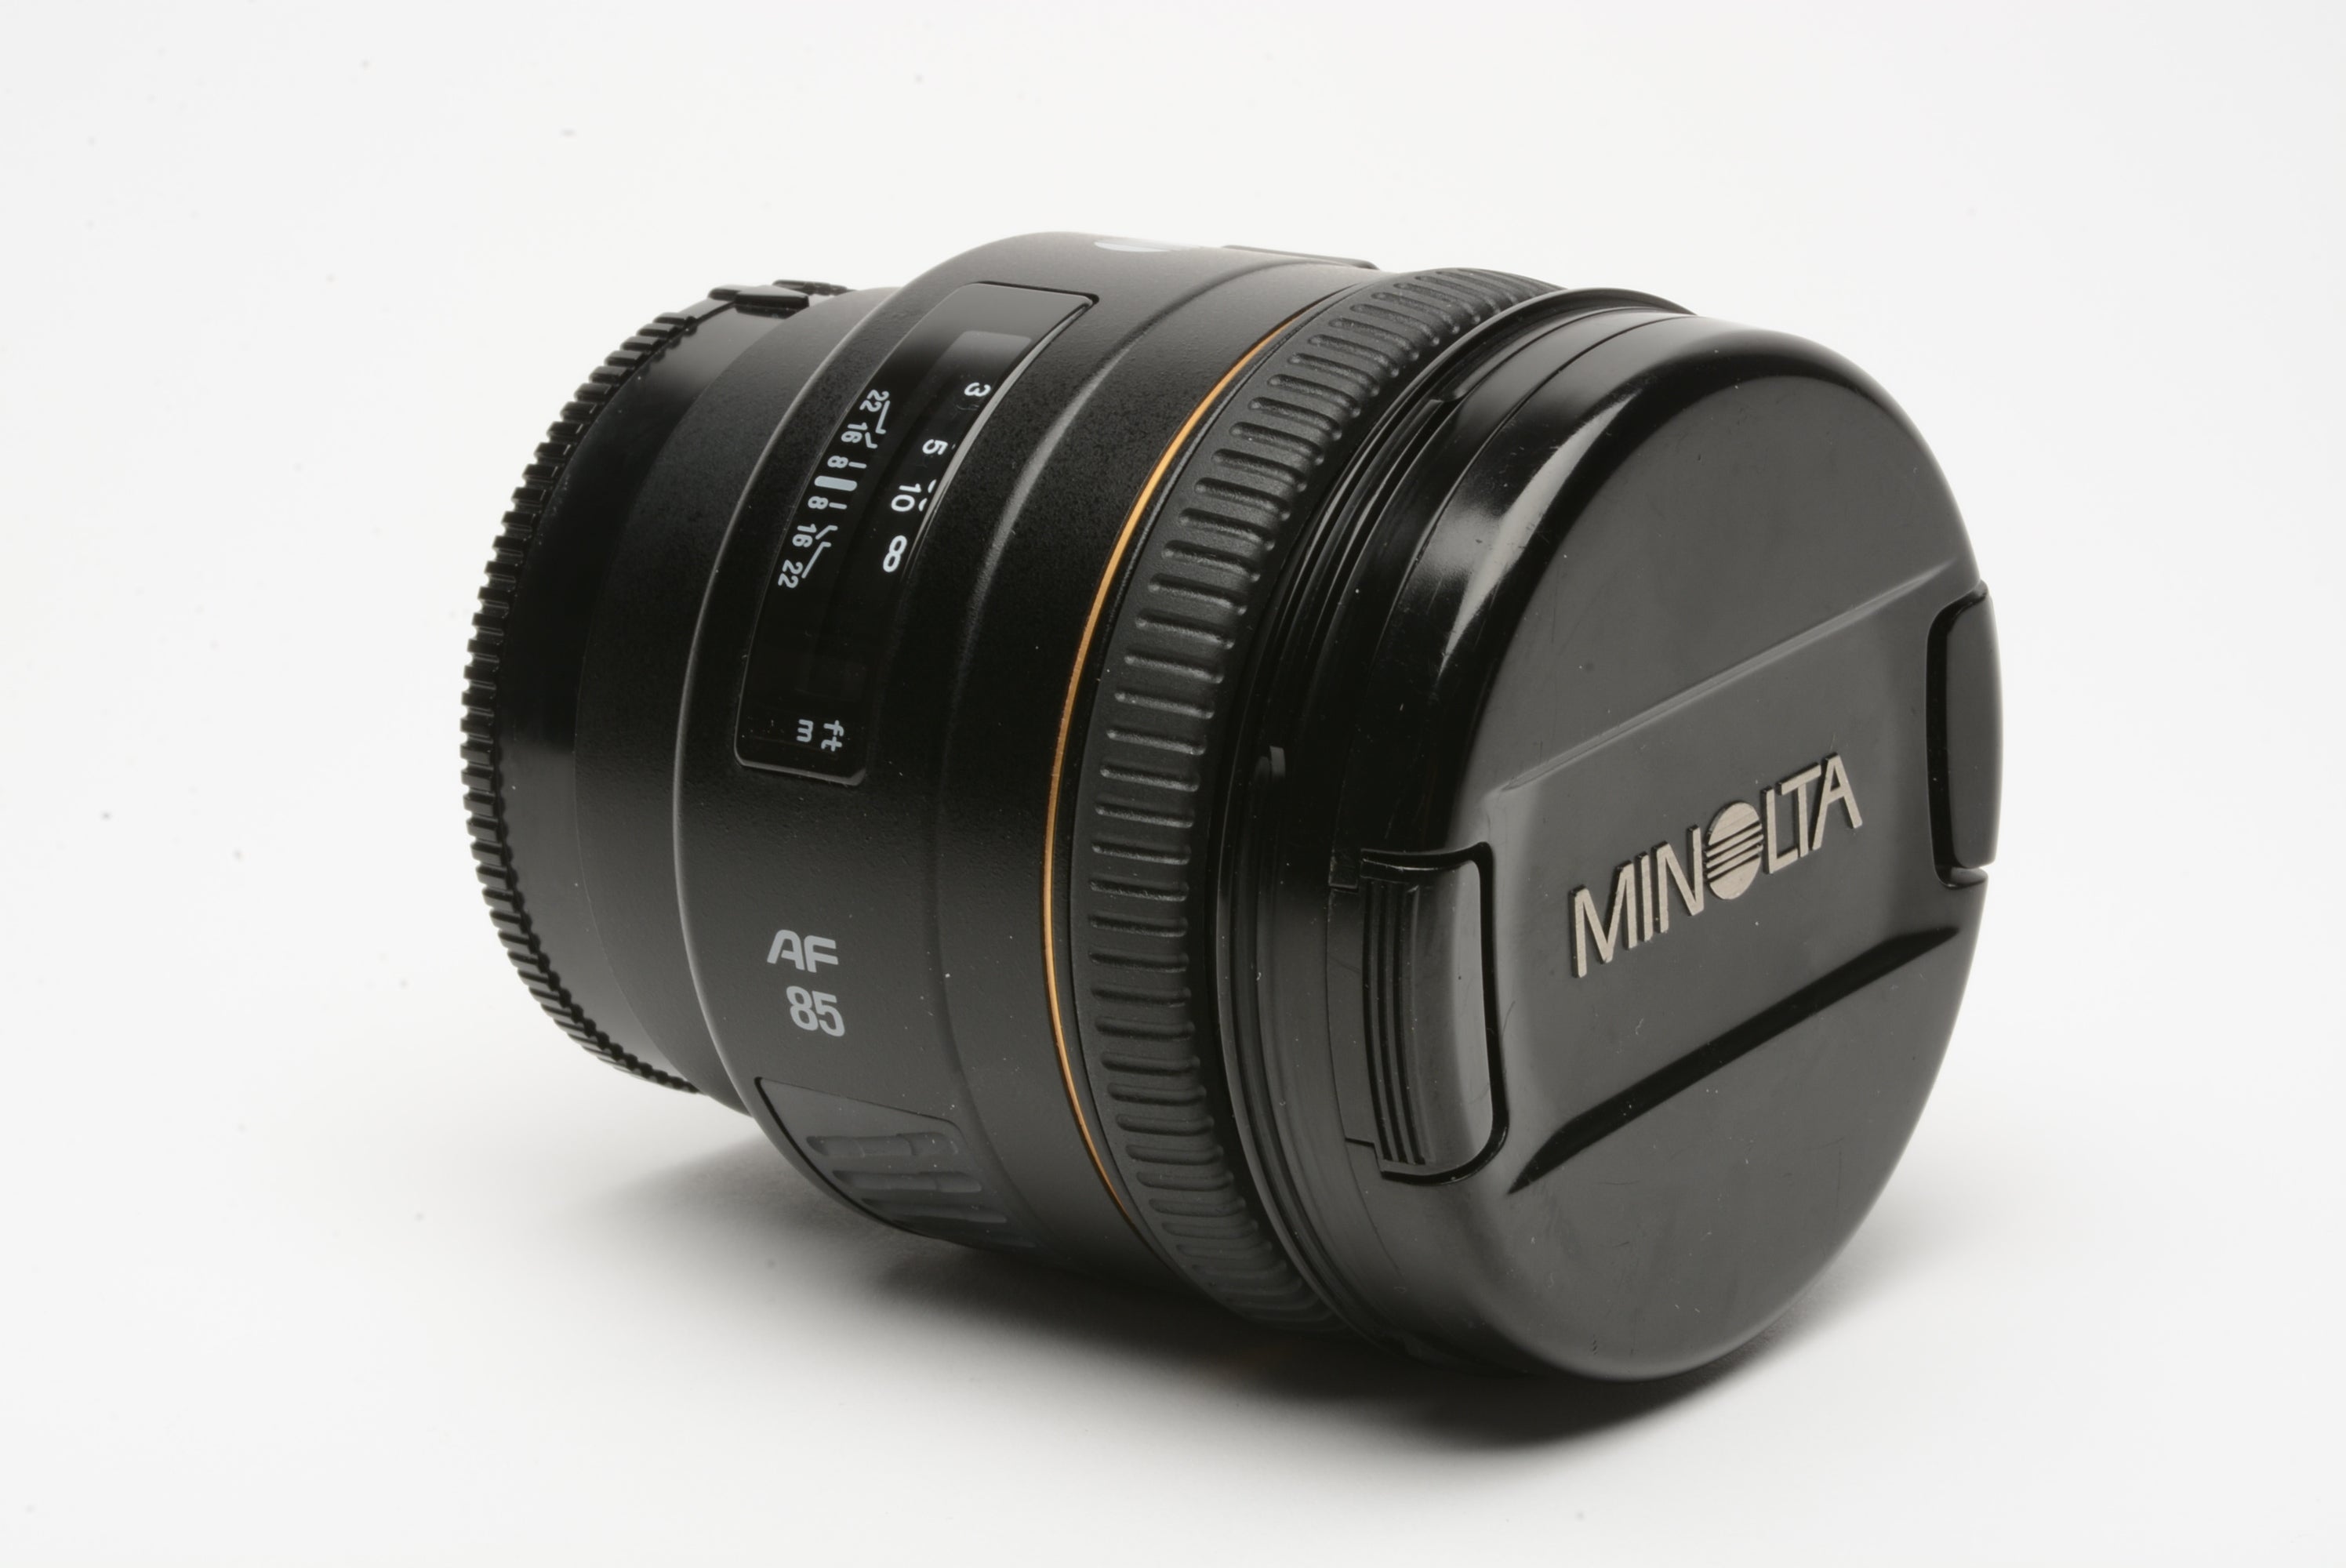 Minolta Maxxum AF mm f1.4 G "new" portrait lens, case, box